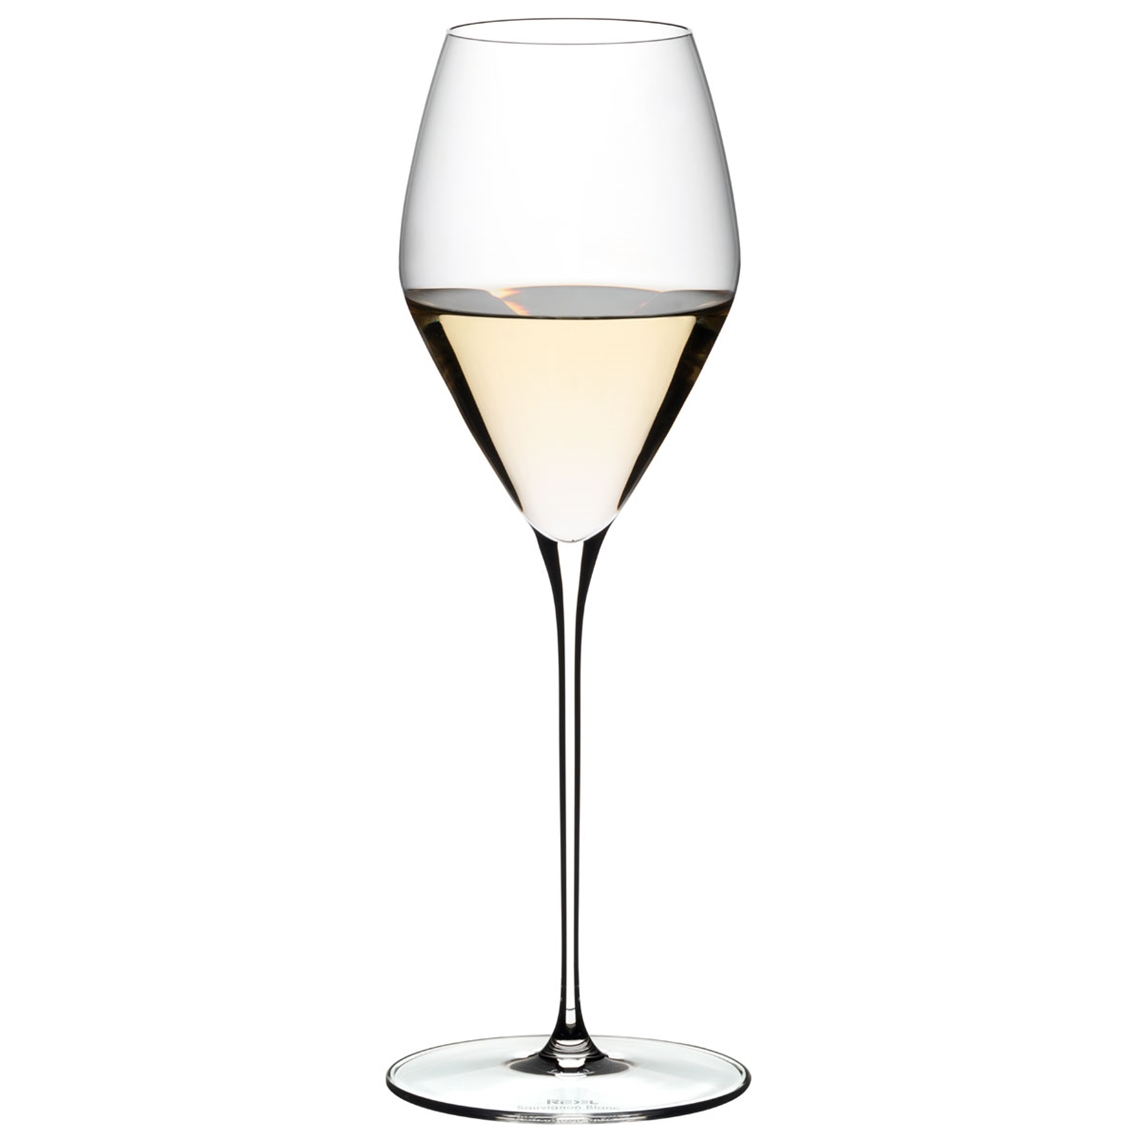 Riedel Restaurant Veloce - Sauvignon Blanc White Wine Glass 347ml - 0330/33